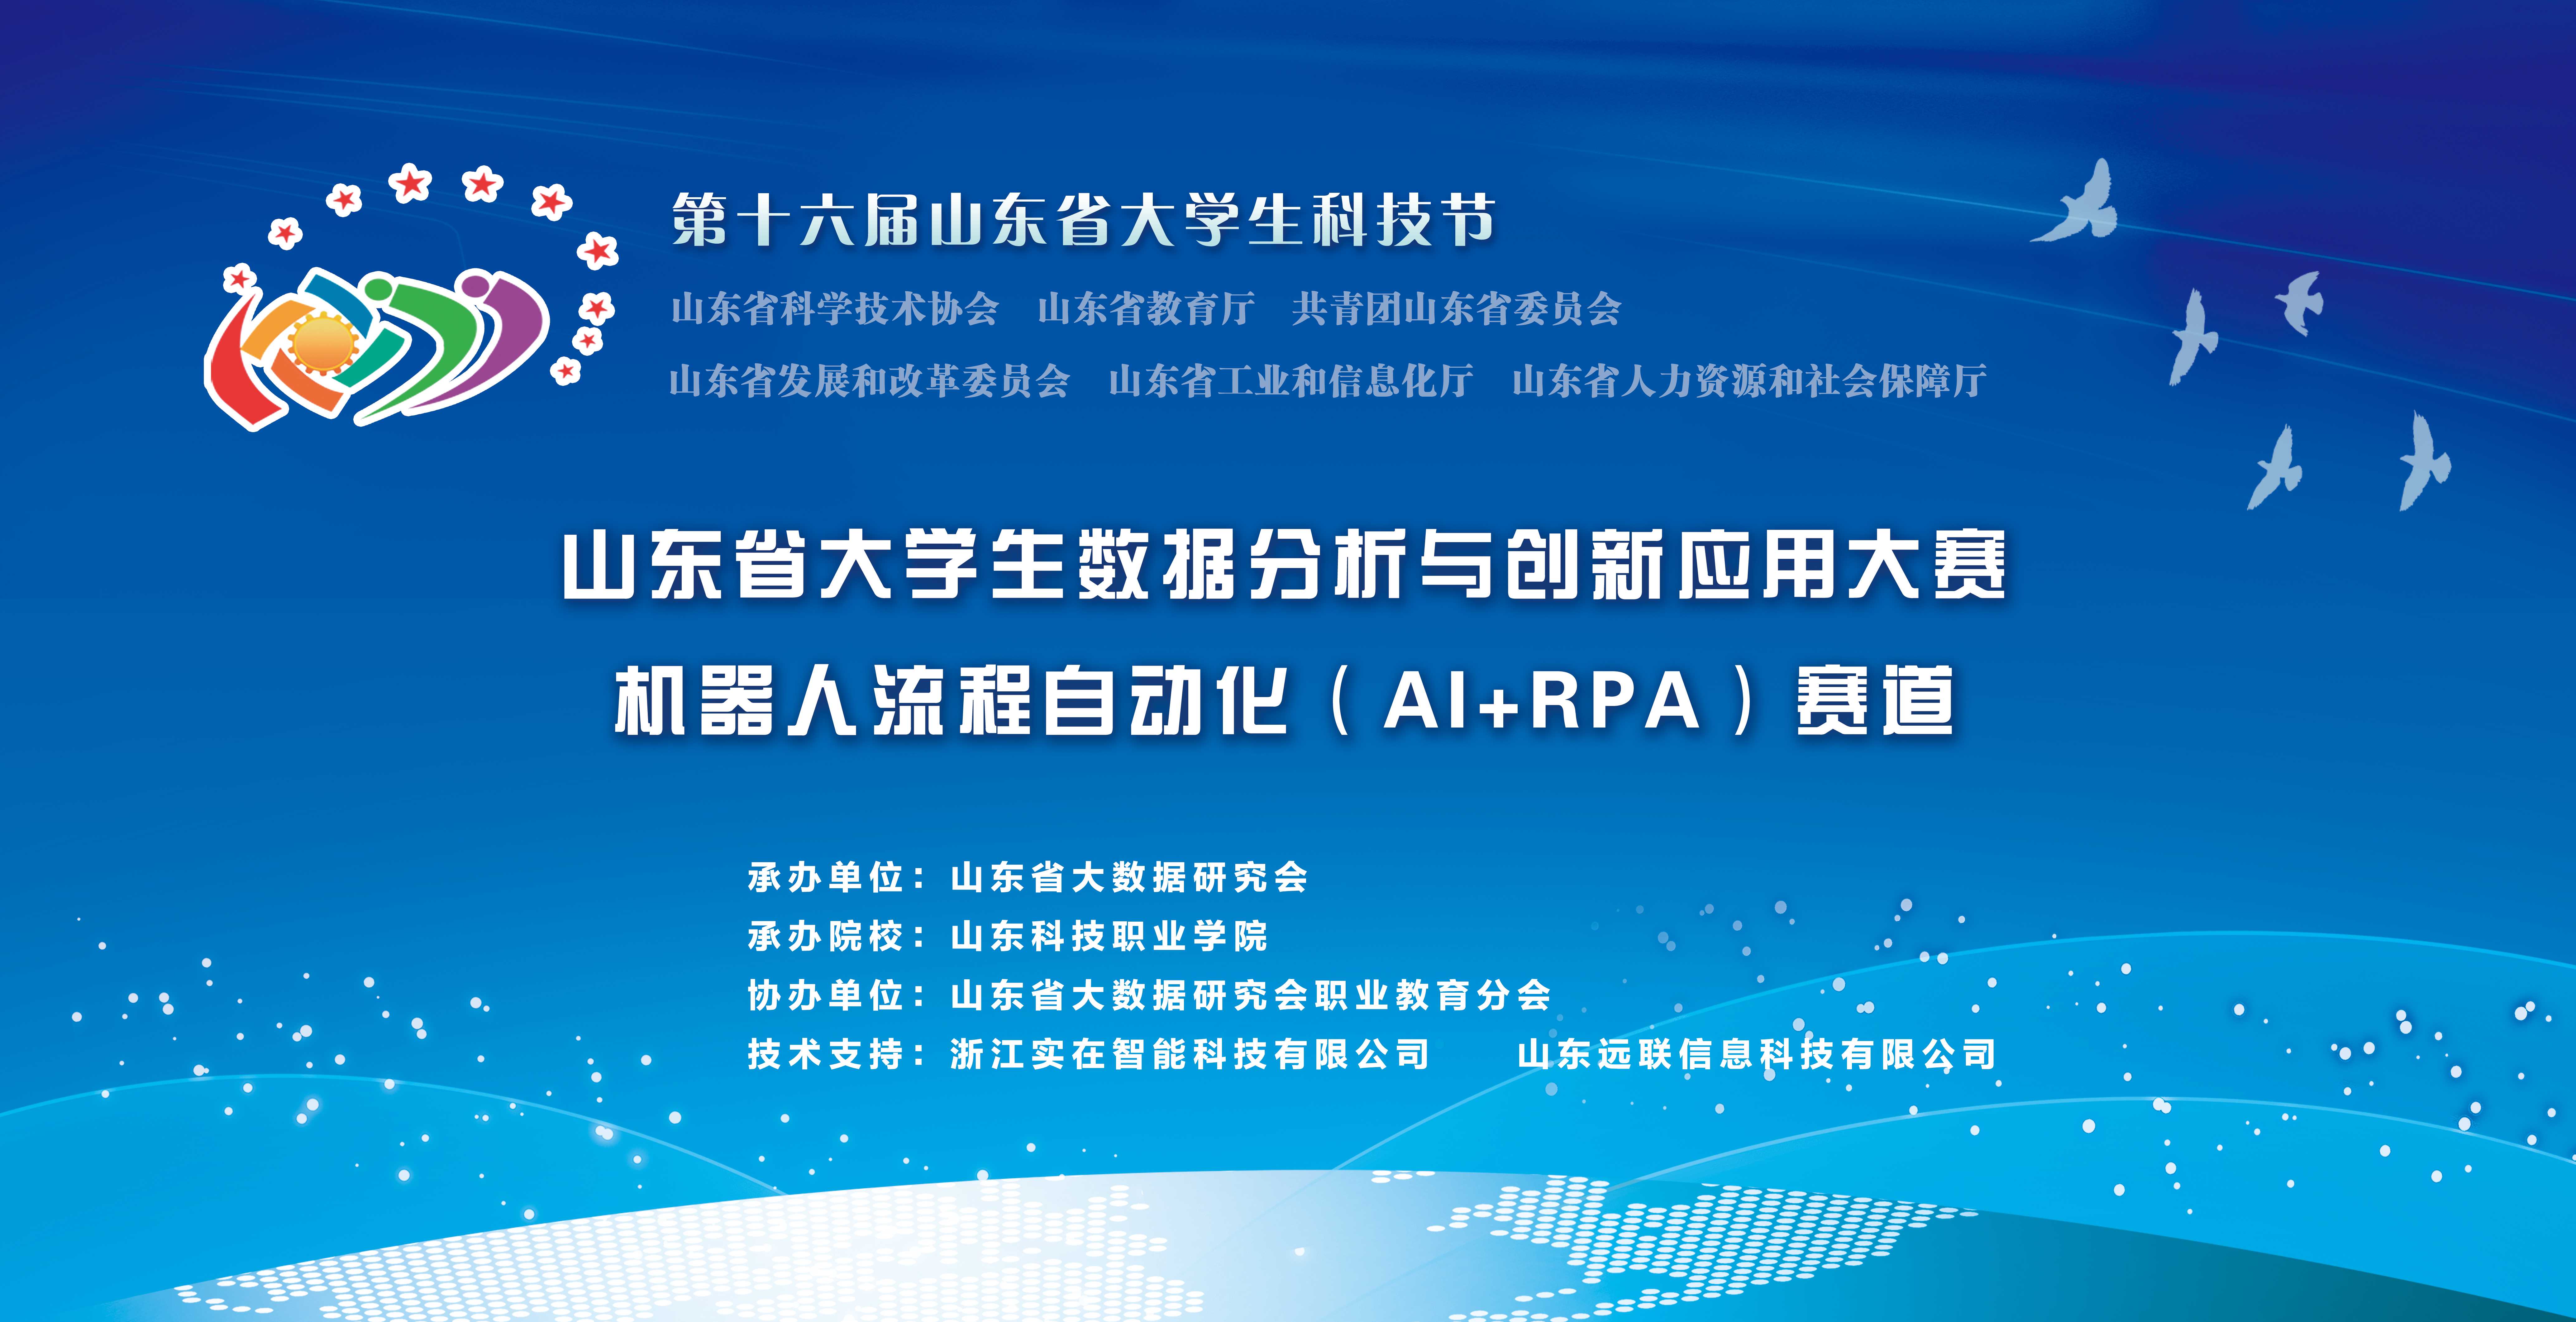 山东省大学生数据分析与创新应用大赛机器人流程自动化（AI RPA）赛道的通知